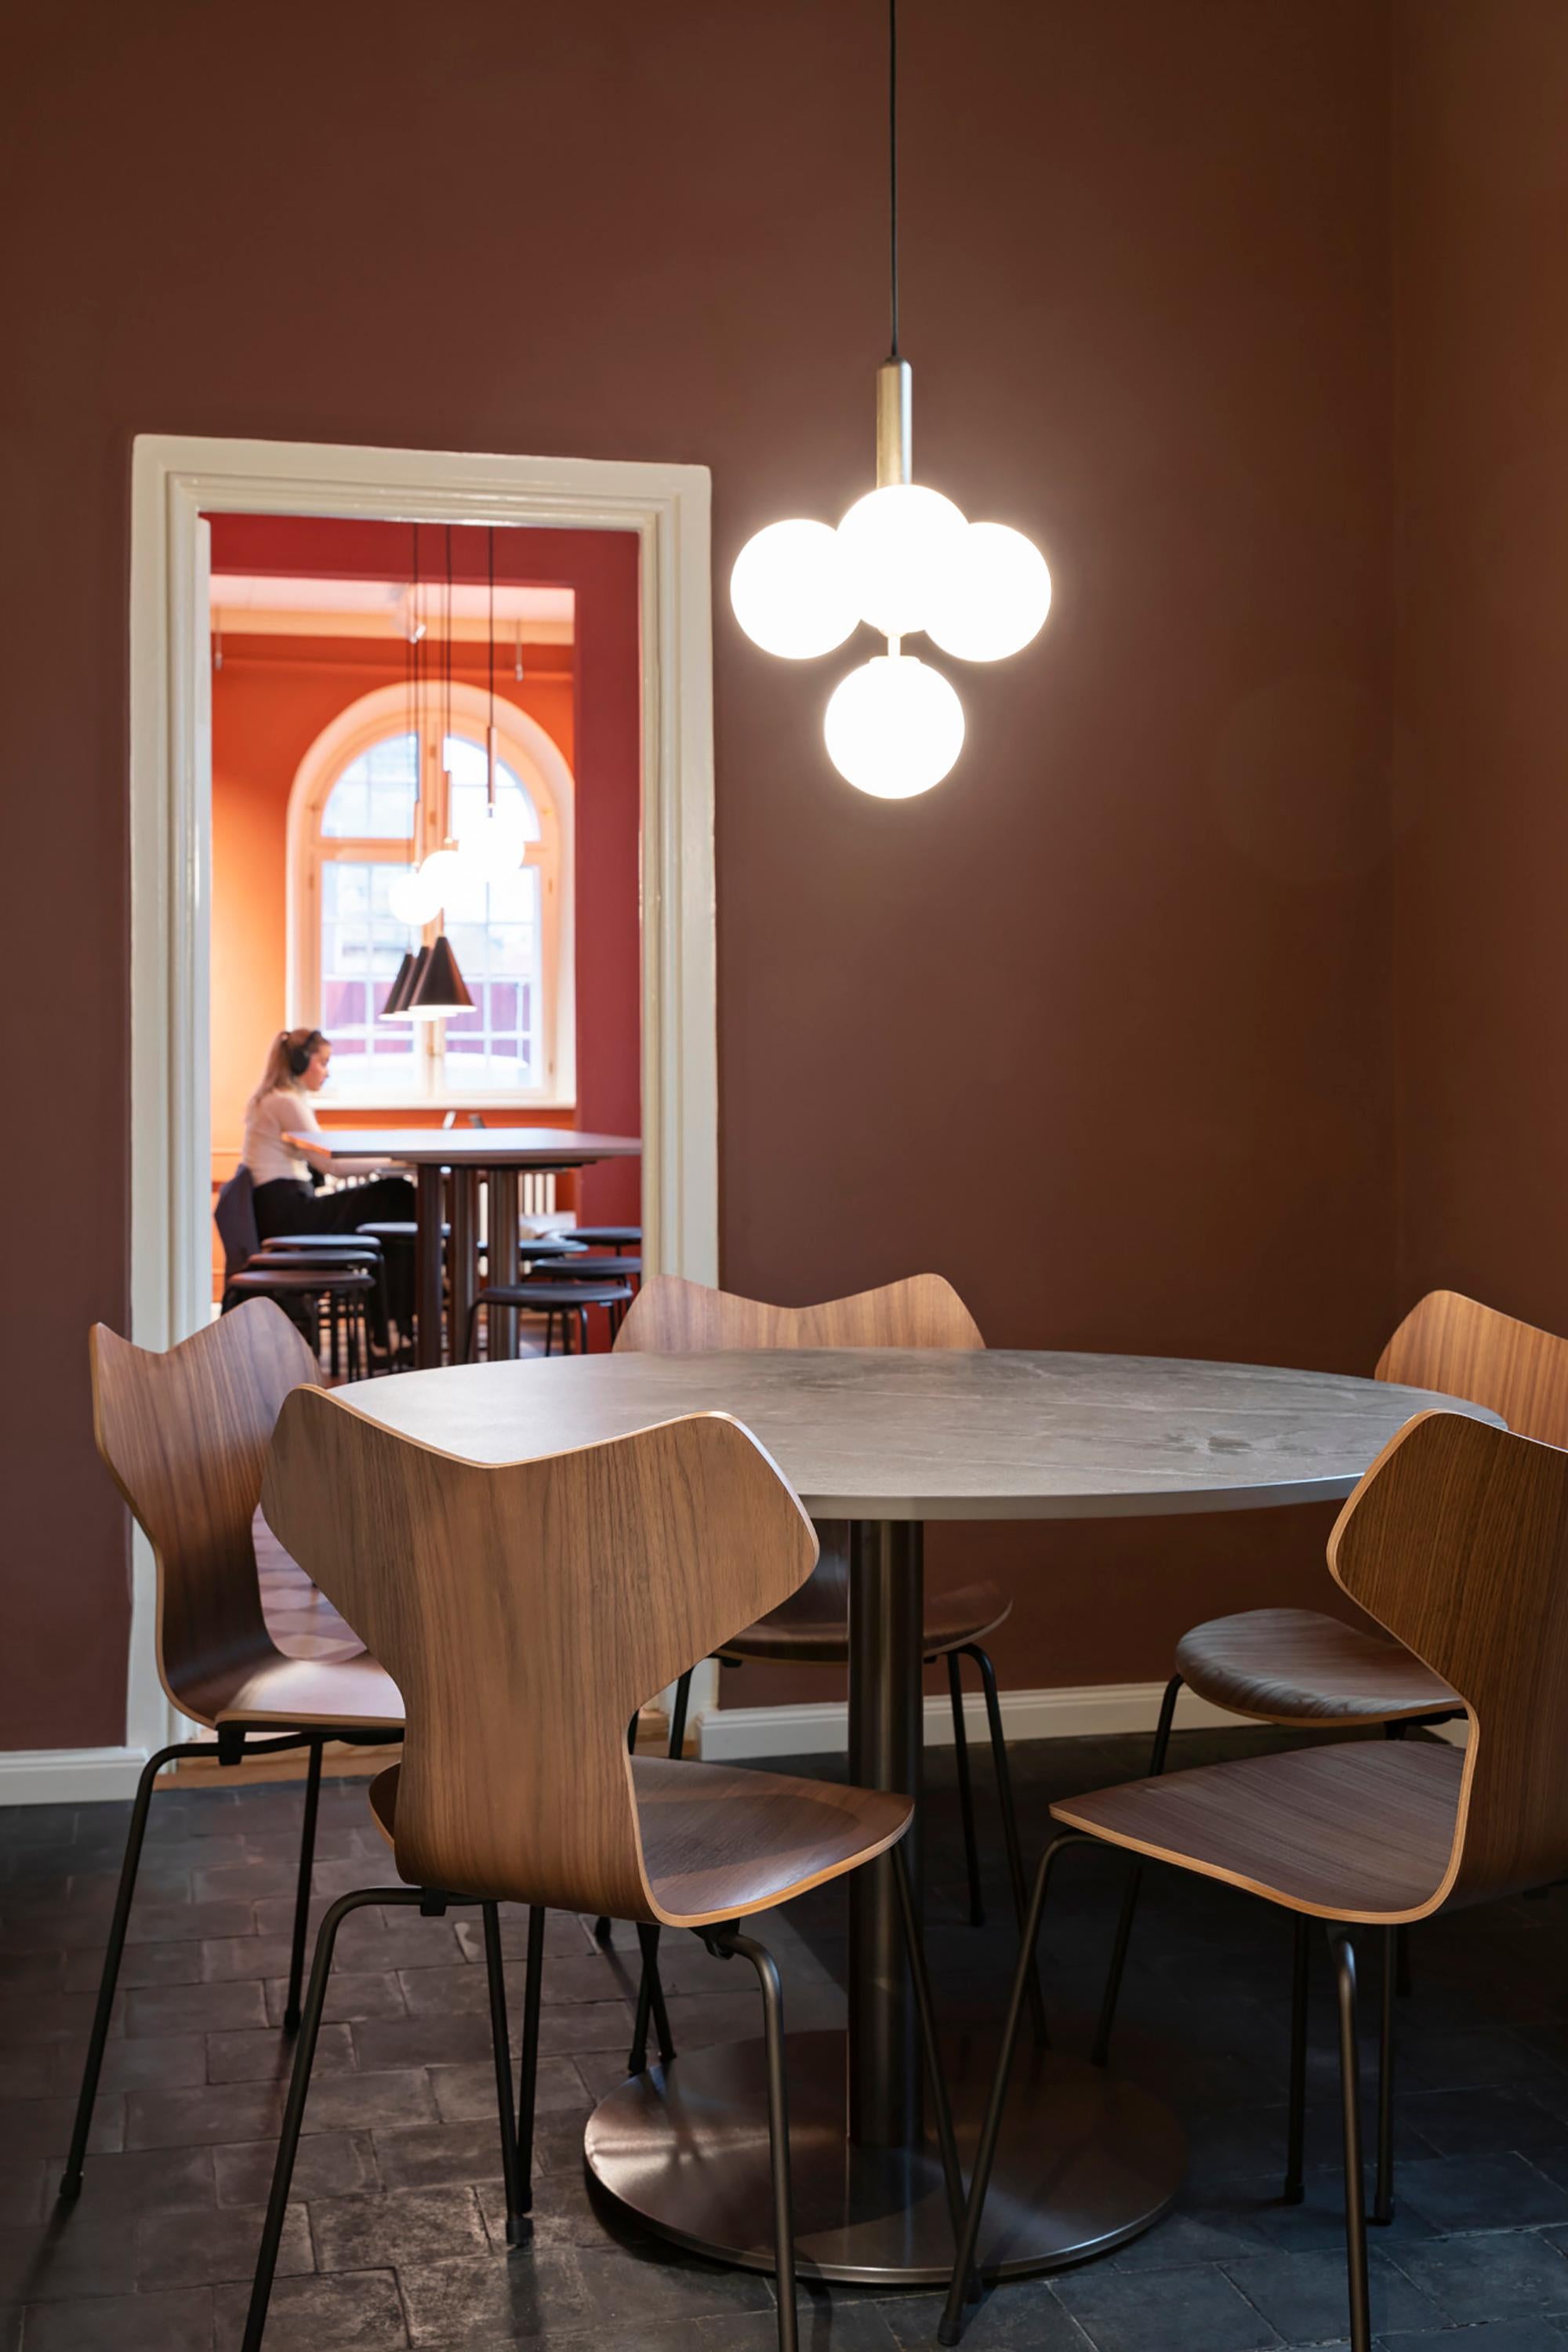 Arne Jacobsen 'Grand Prix' Stuhl für Fritz Hansen in klar lackiertem Furnier.

Fritz Hansen wurde 1872 gegründet und ist zum Synonym für legendäres dänisches Design geworden. Die Marke kombiniert zeitlose Handwerkskunst mit einem Schwerpunkt auf